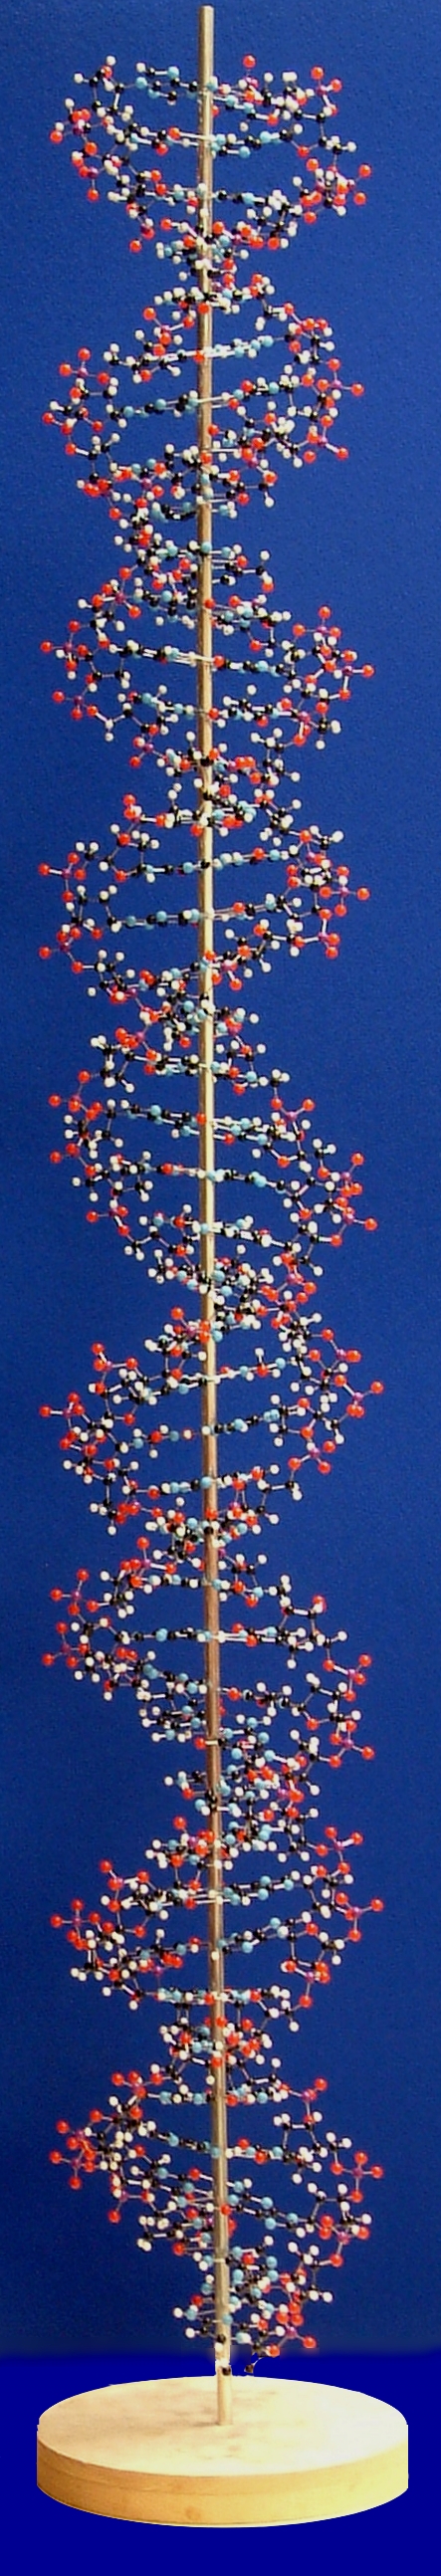 giant DNA model